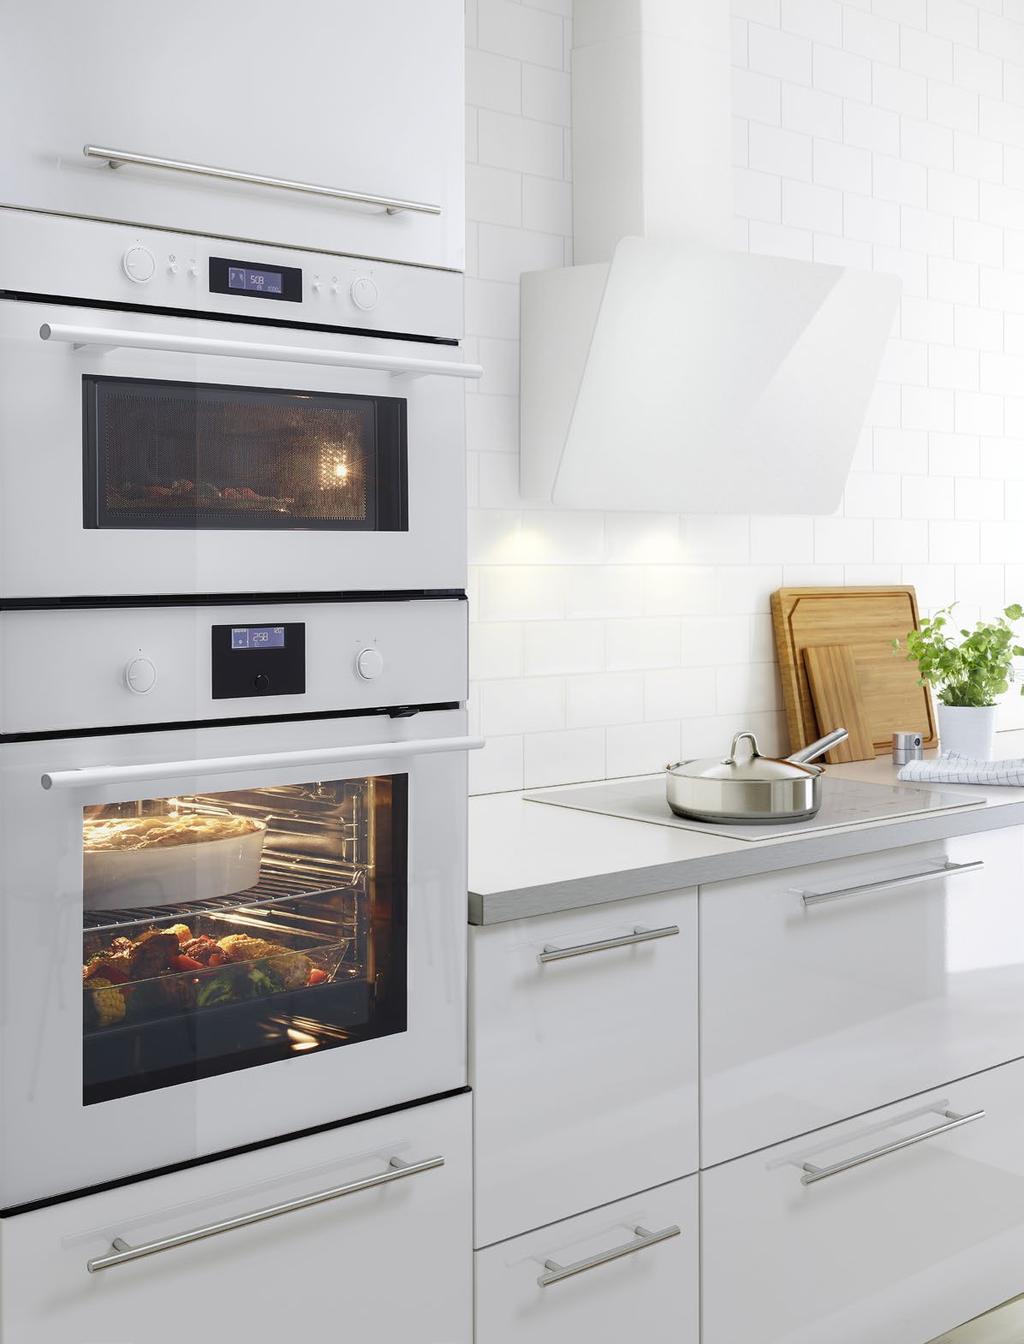 SPRZĘT GODNY ZAUFANIA Dążymy do tego, by konstruowane przez nas urządzenia AGD ułatwiały wykonywanie kuchennych prac i pomagały w prowadzeniu bardziej zrównoważonego życia w domu.